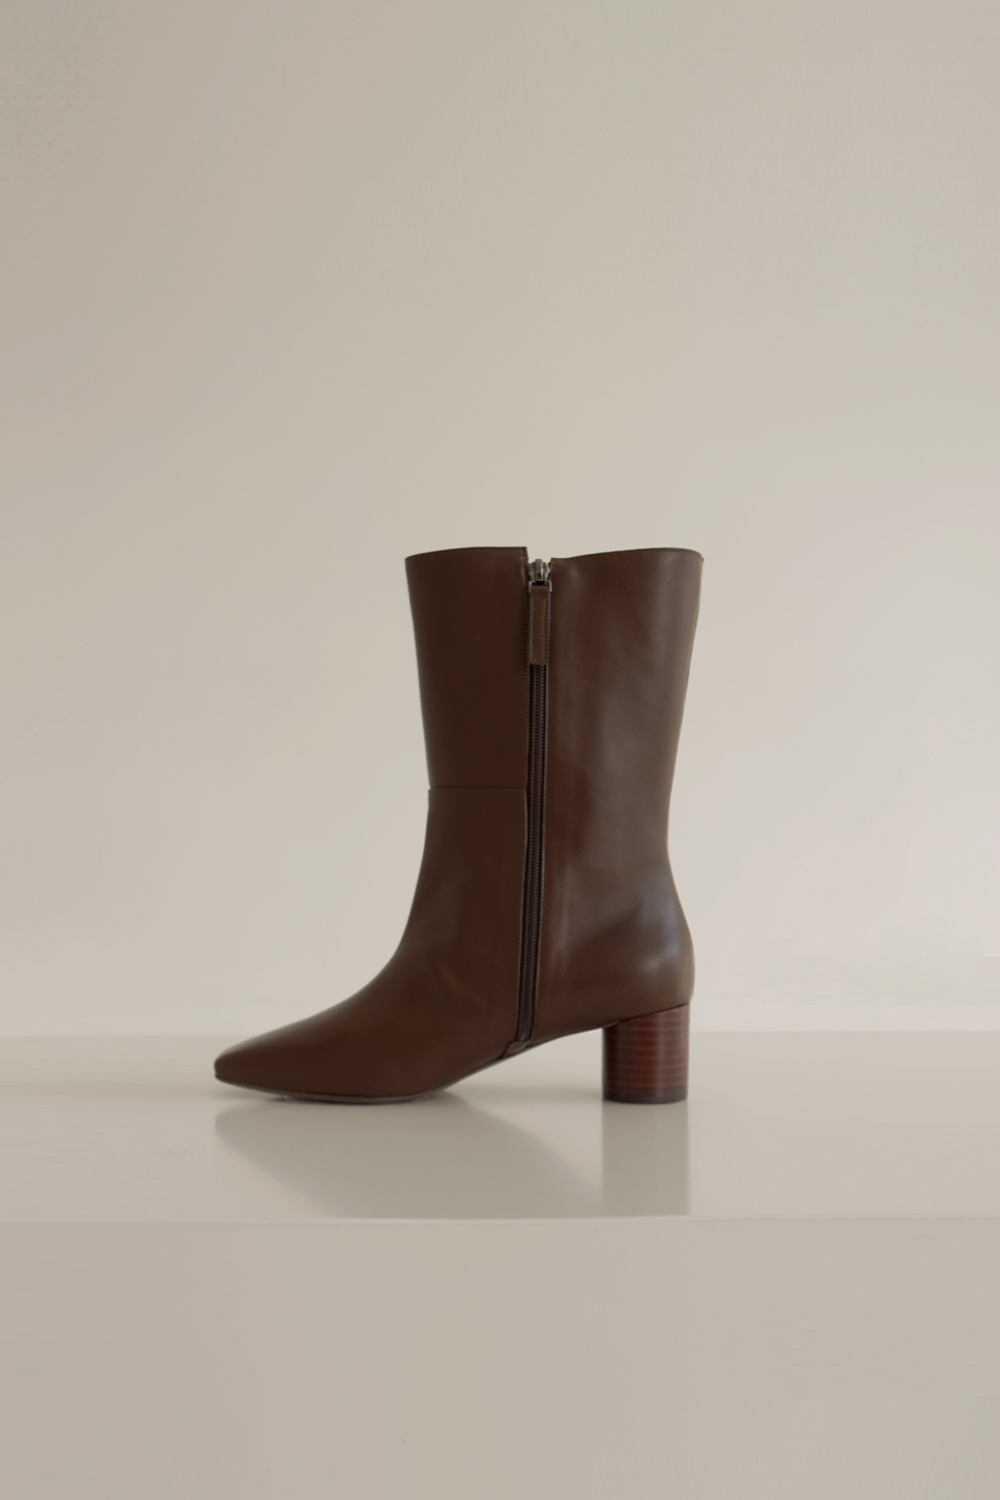 ANTHÈSE ruben short boots, brown